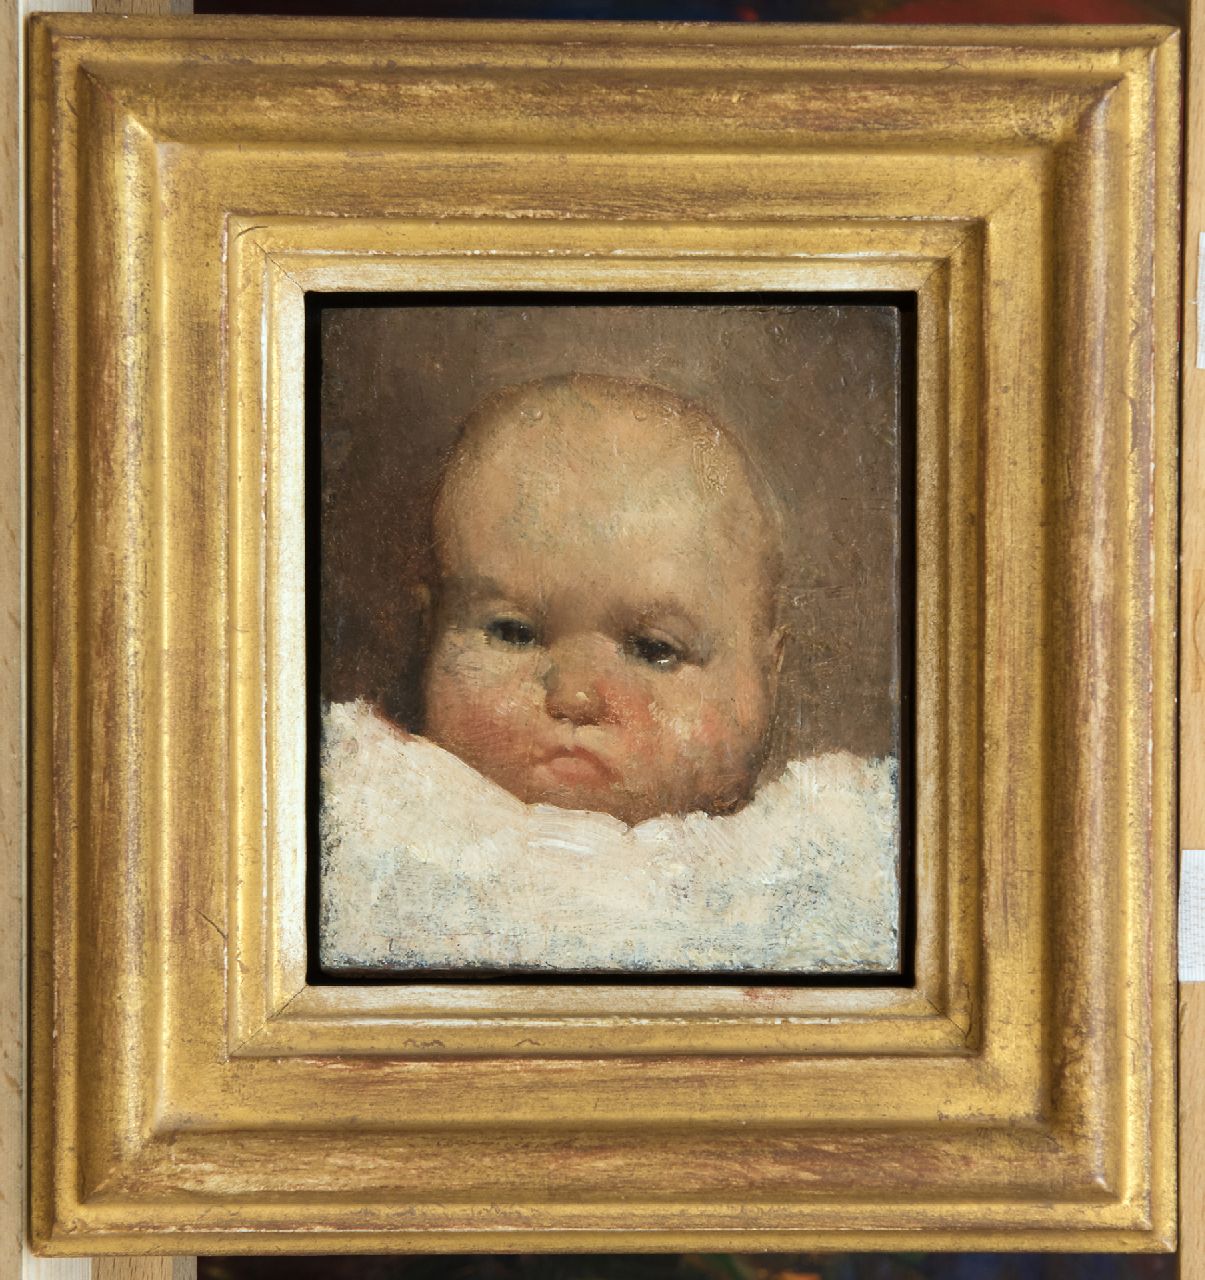 Berg W.H. van den | 'Willem' Hendrik van den Berg | Schilderijen te koop aangeboden | Babyportretje, olieverf op paneel 10,3 x 9,2 cm